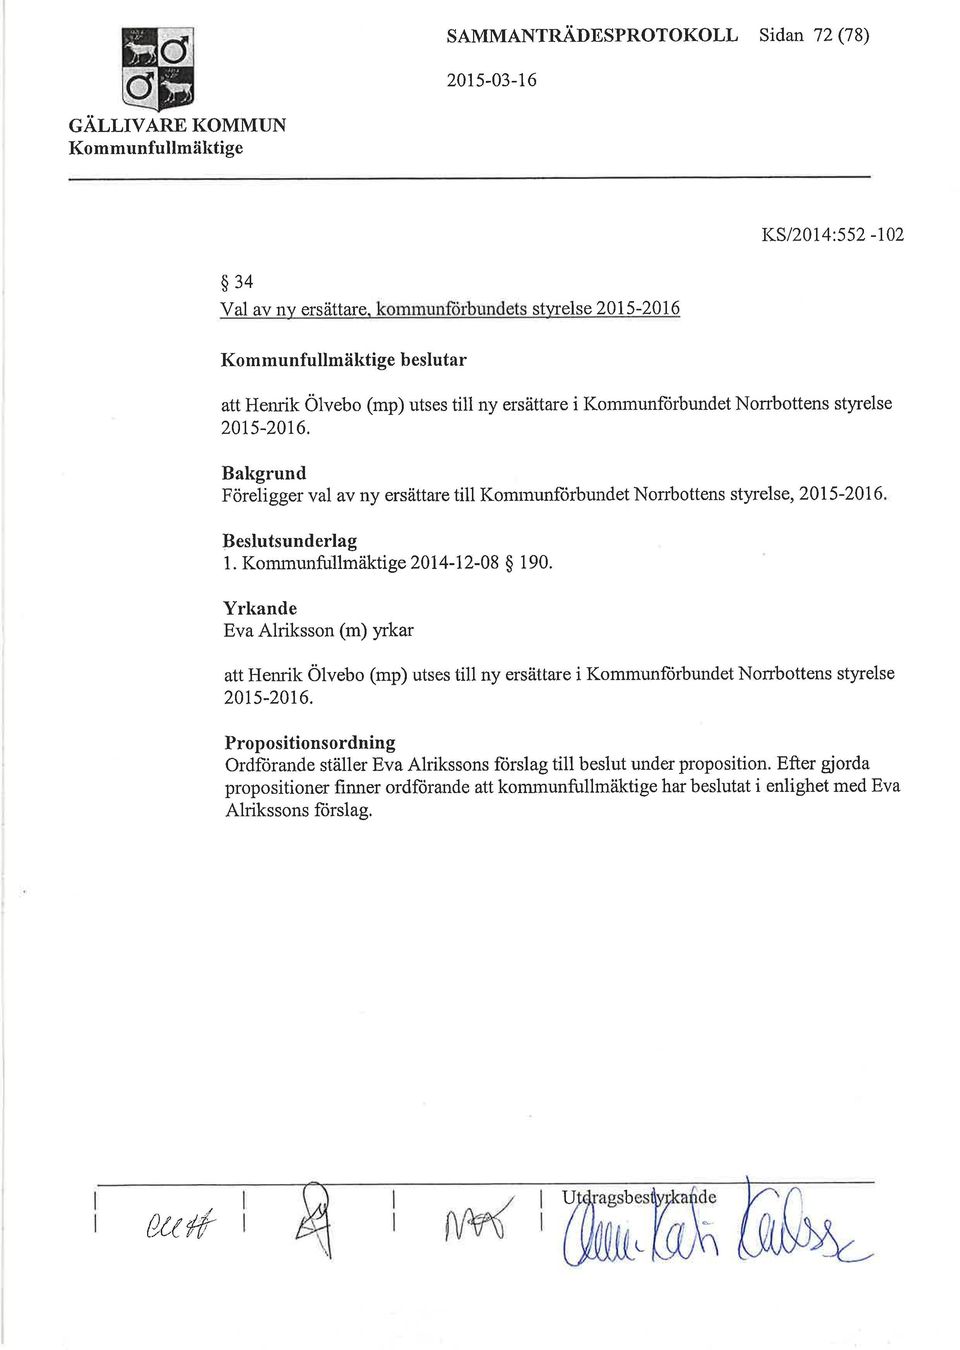 Bakgrund Föreligger val av ny ersättare till Komrnunforbundet Norrbottens styrelse, 2015-2016 Beslutsunderlag 1. Kommuntullmäktige 2014-12-08 $ 1 90.